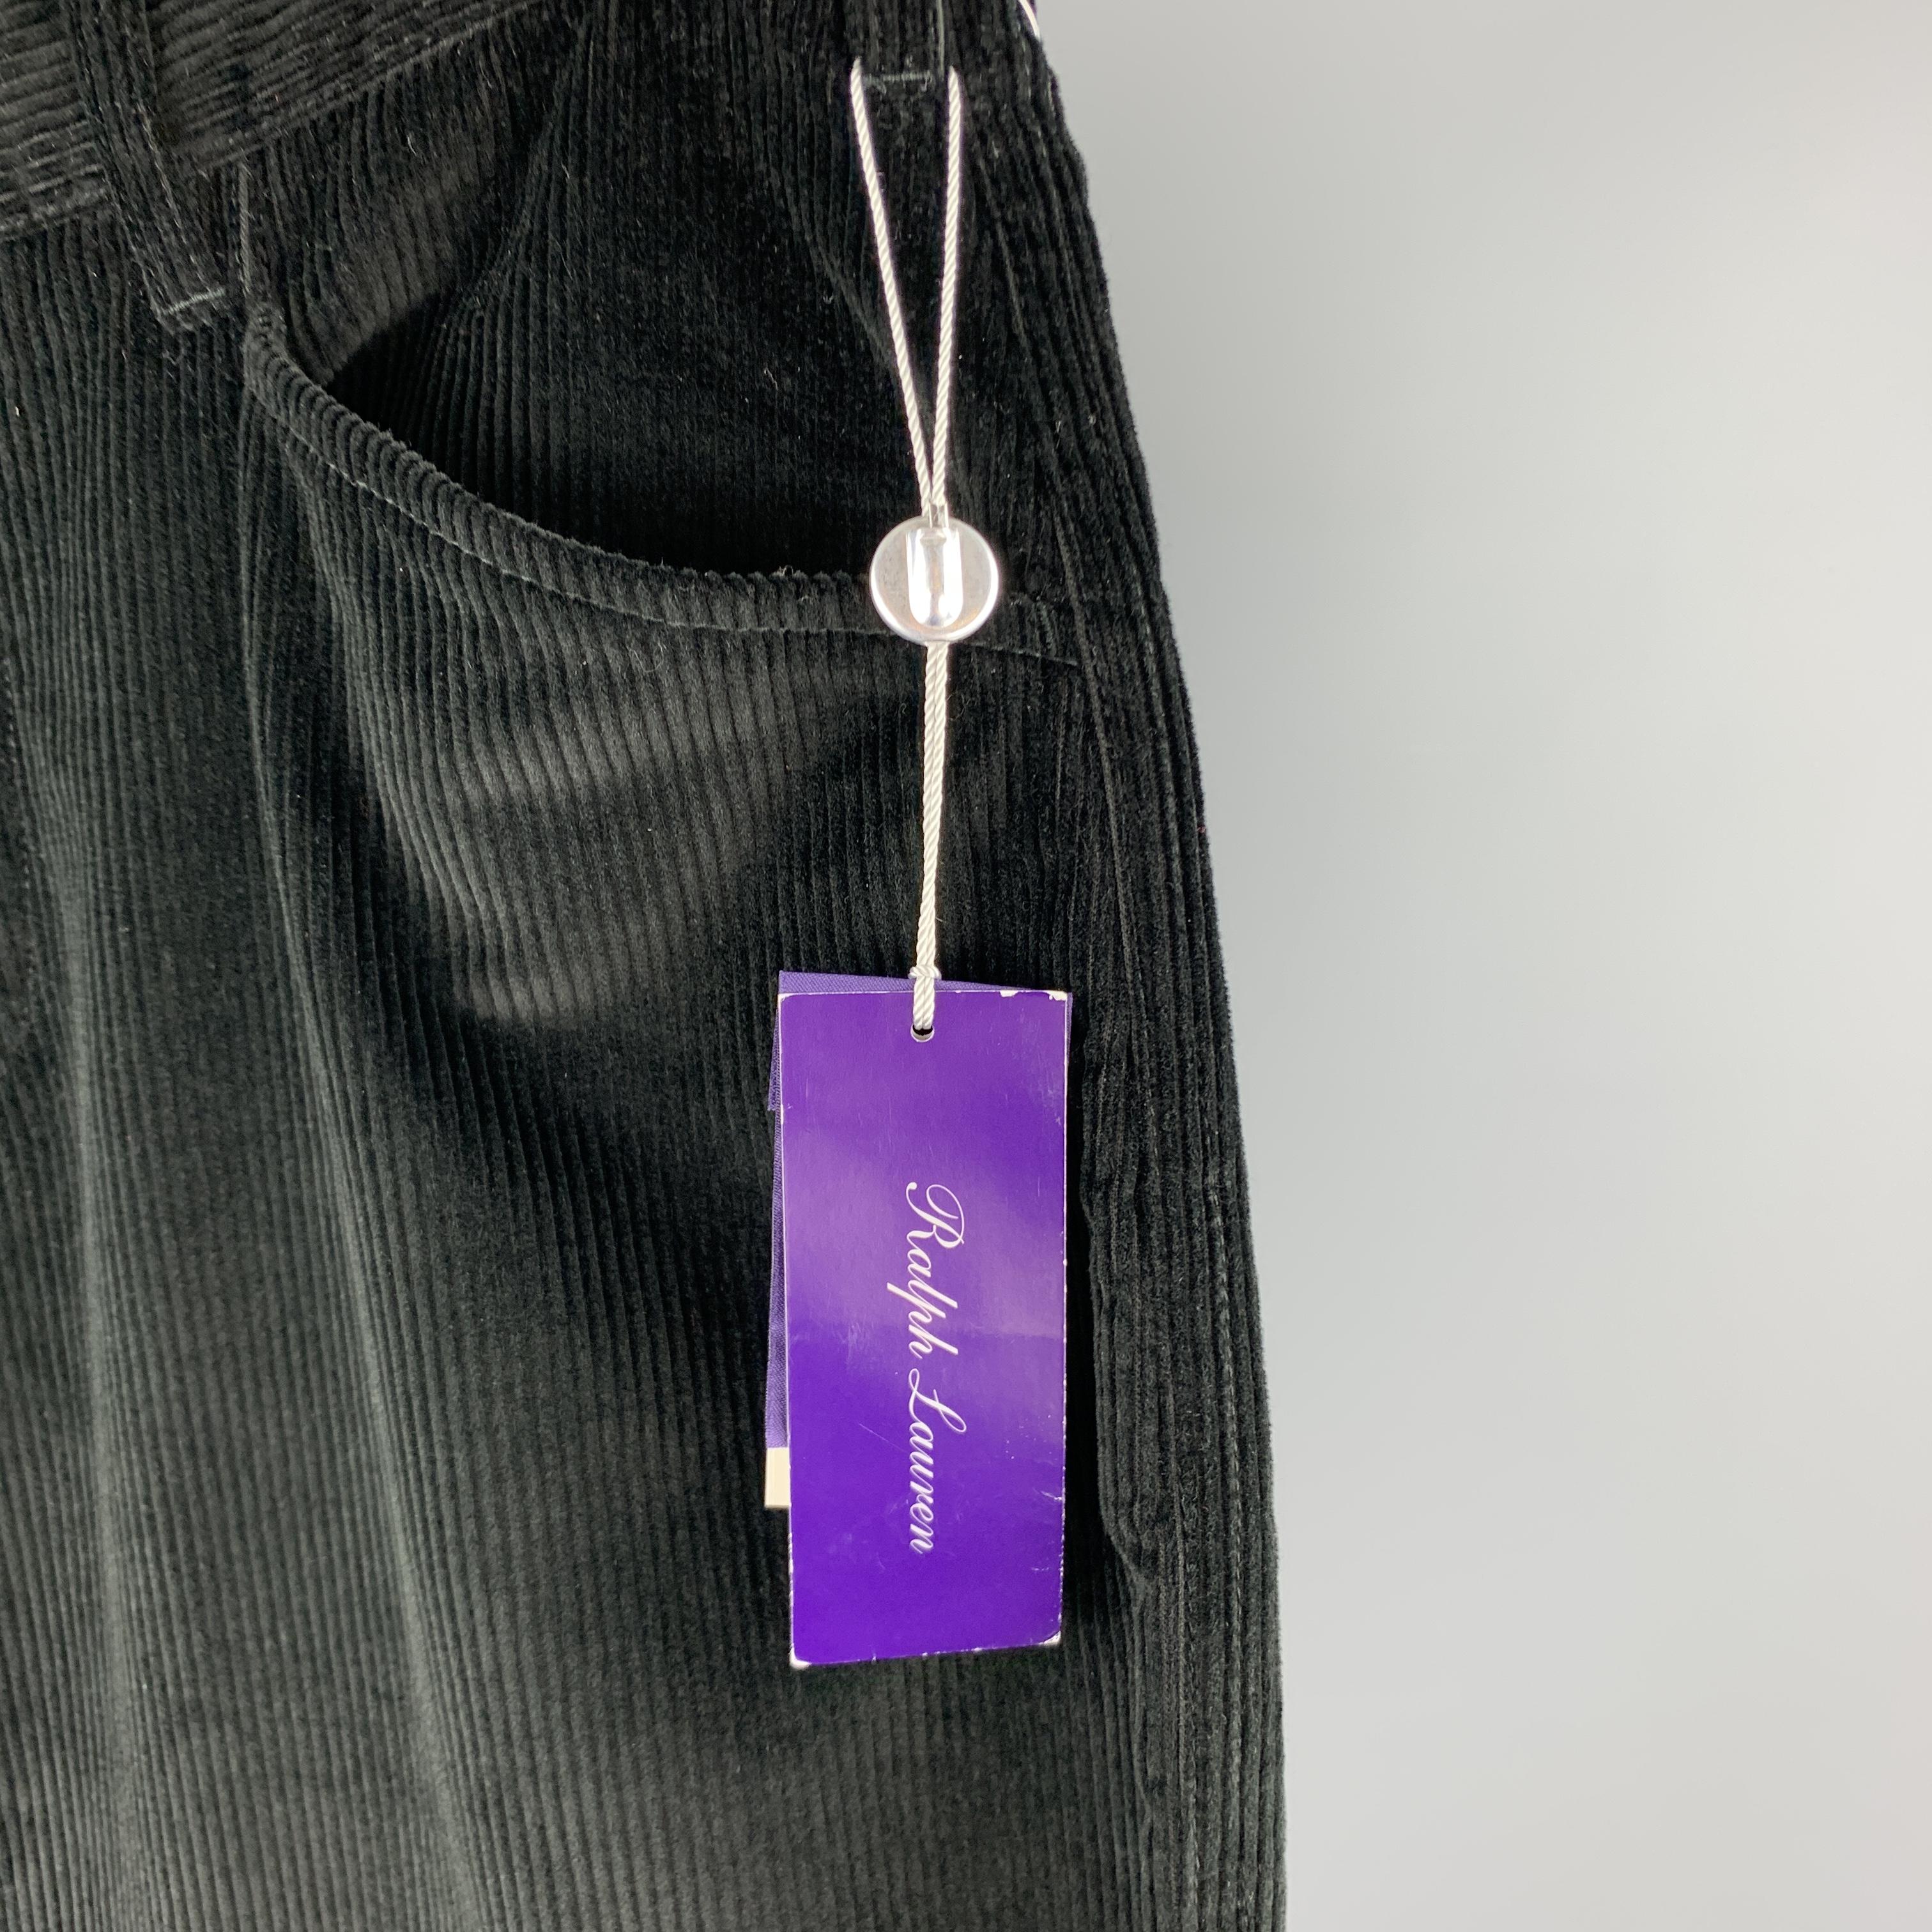 purple pants tag